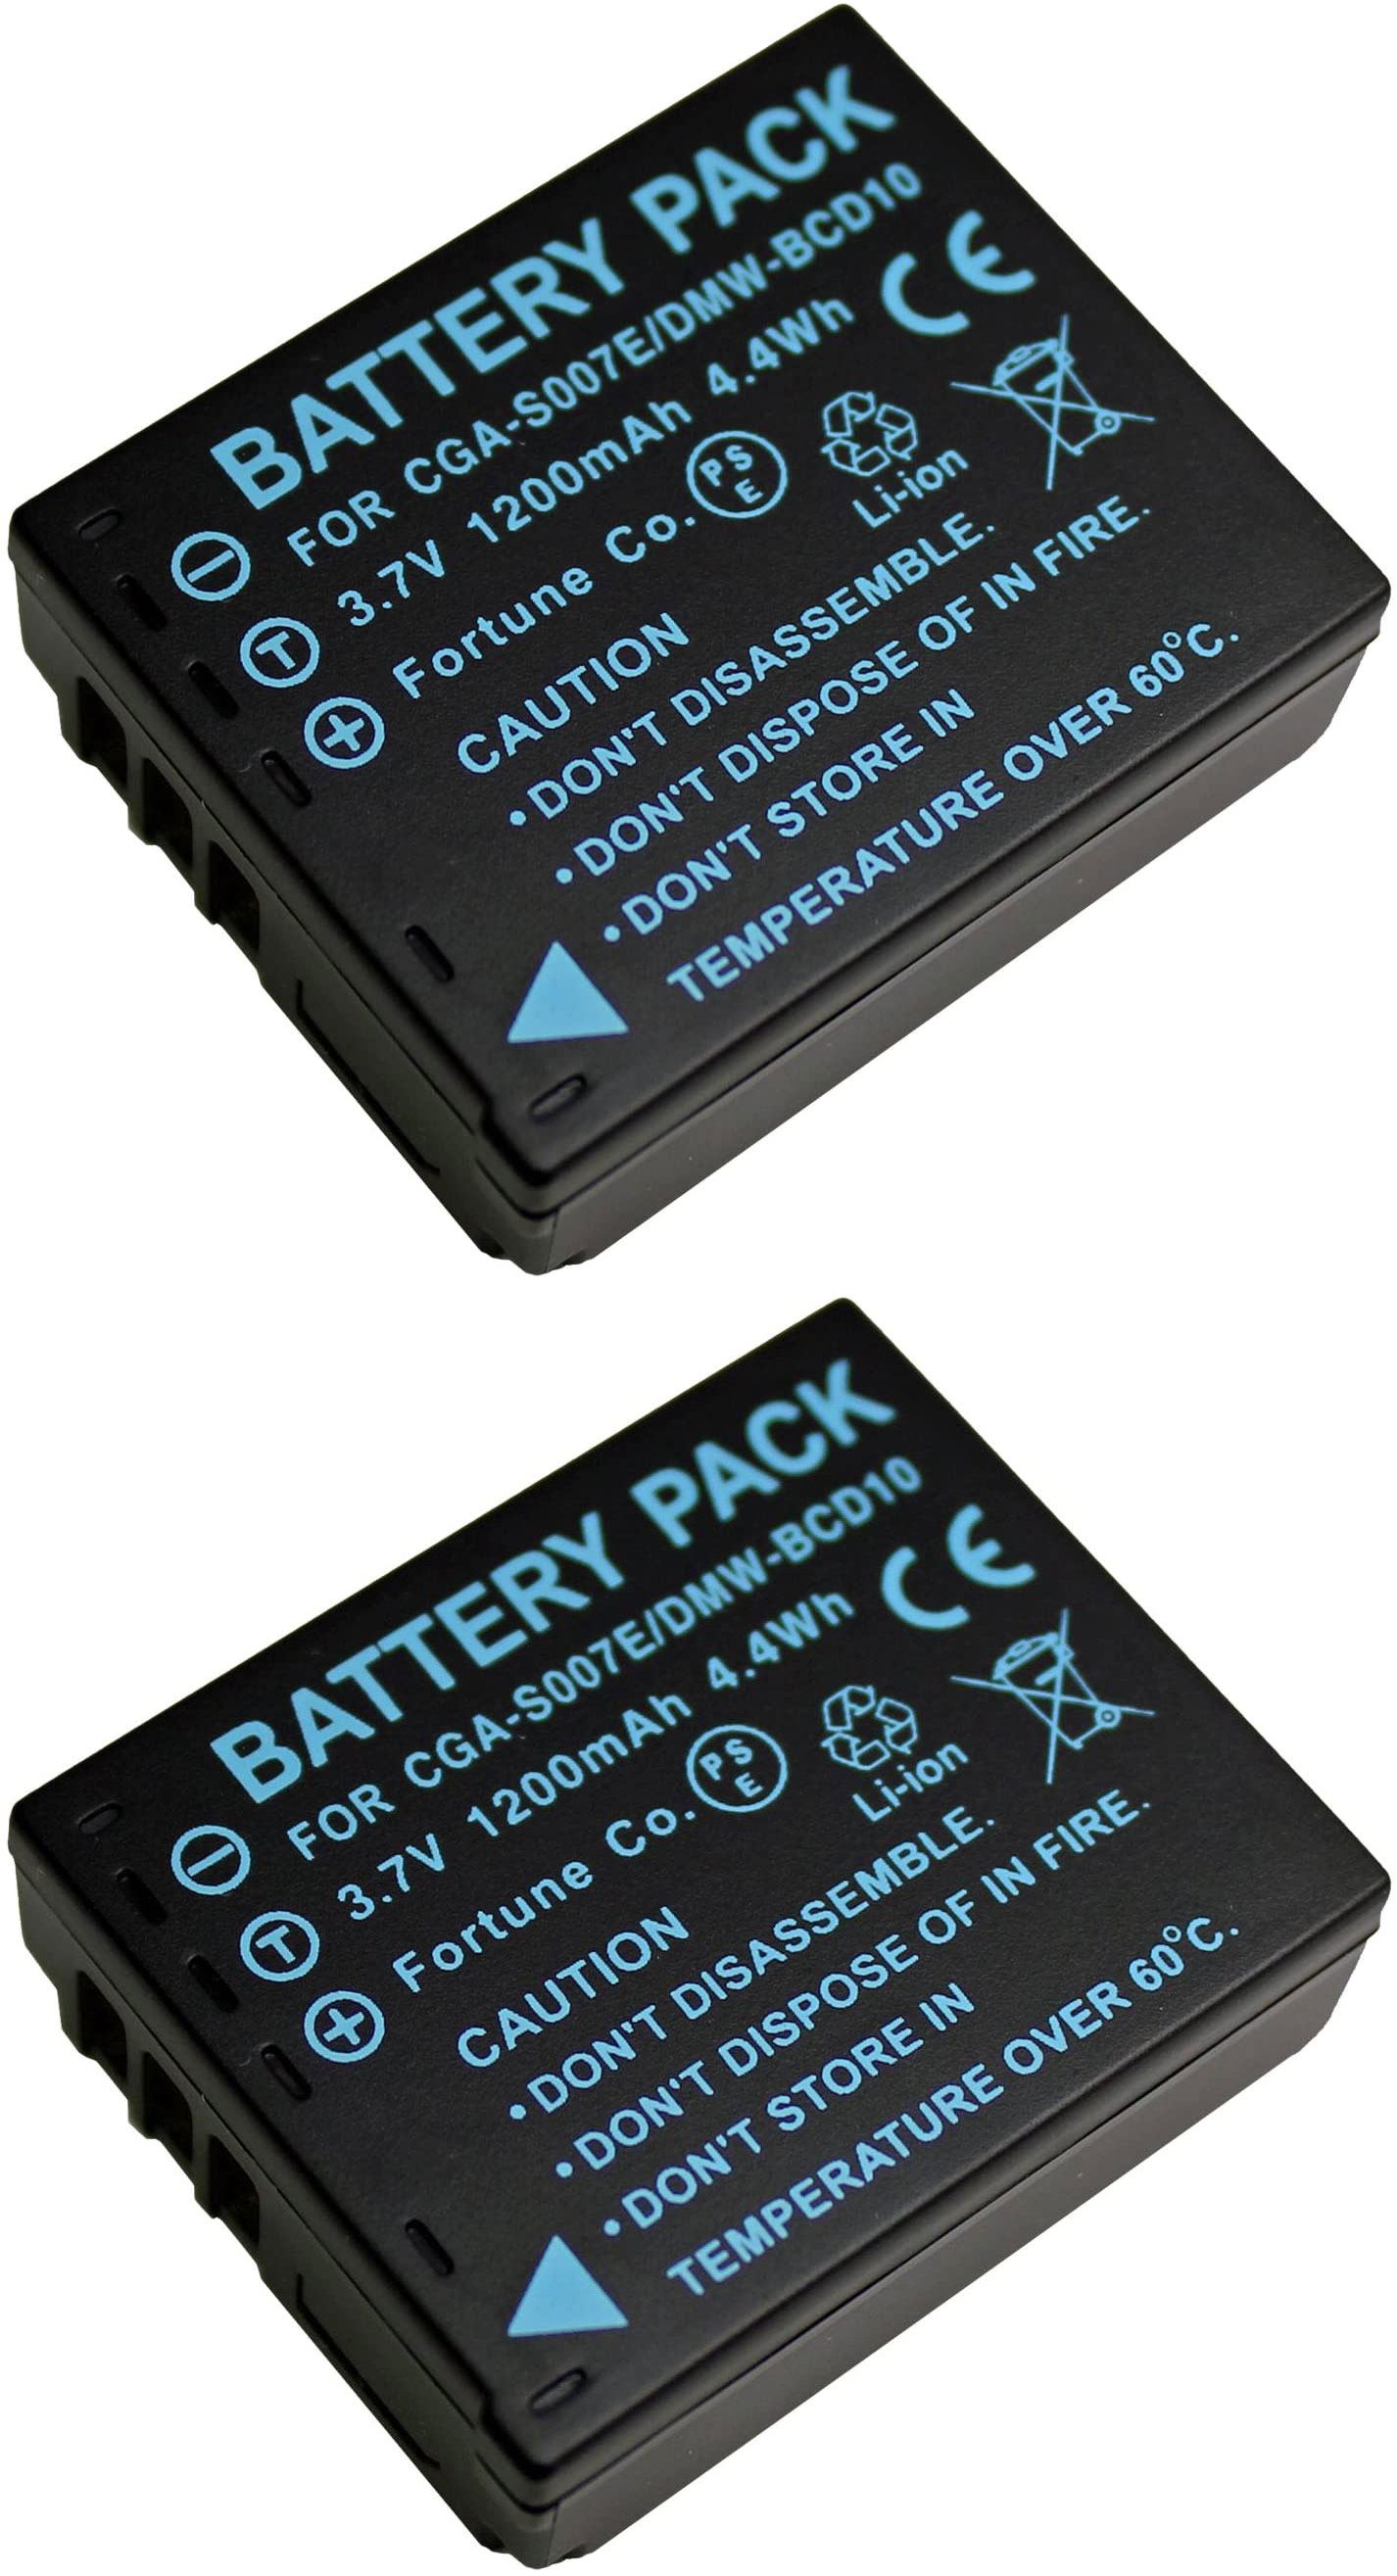 2 piece set Panasonic Panasonic DMW-BCD10 interchangeable battery LUMIX DMC-TZ1 LUMIX DMC-TZ3 LUMIX DMC-TZ5 etc. correspondence DE-A45AE correspondence 